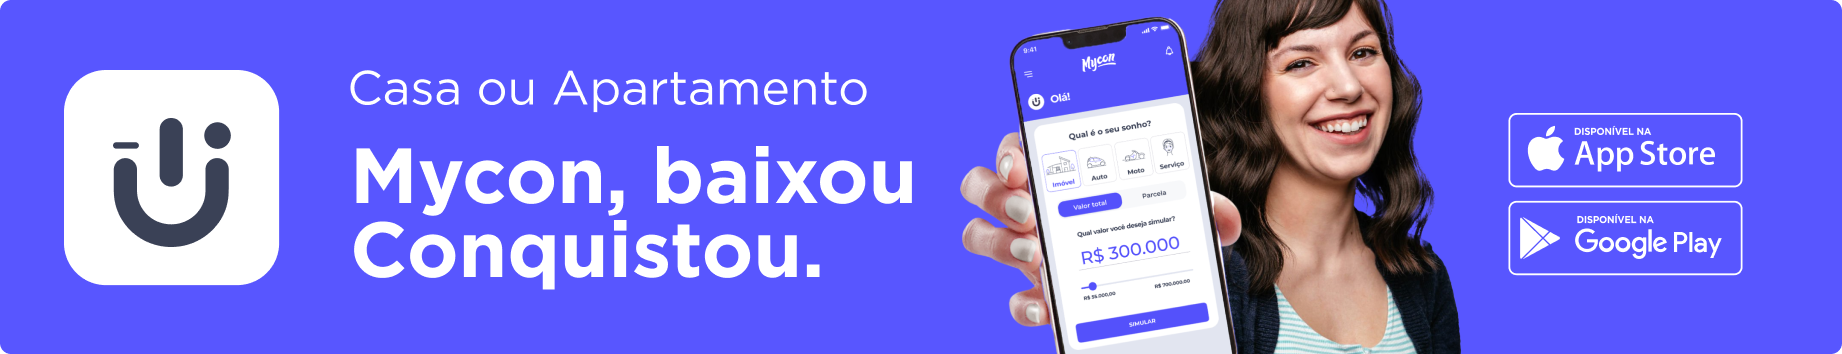 consorcio-digital-mycon-app